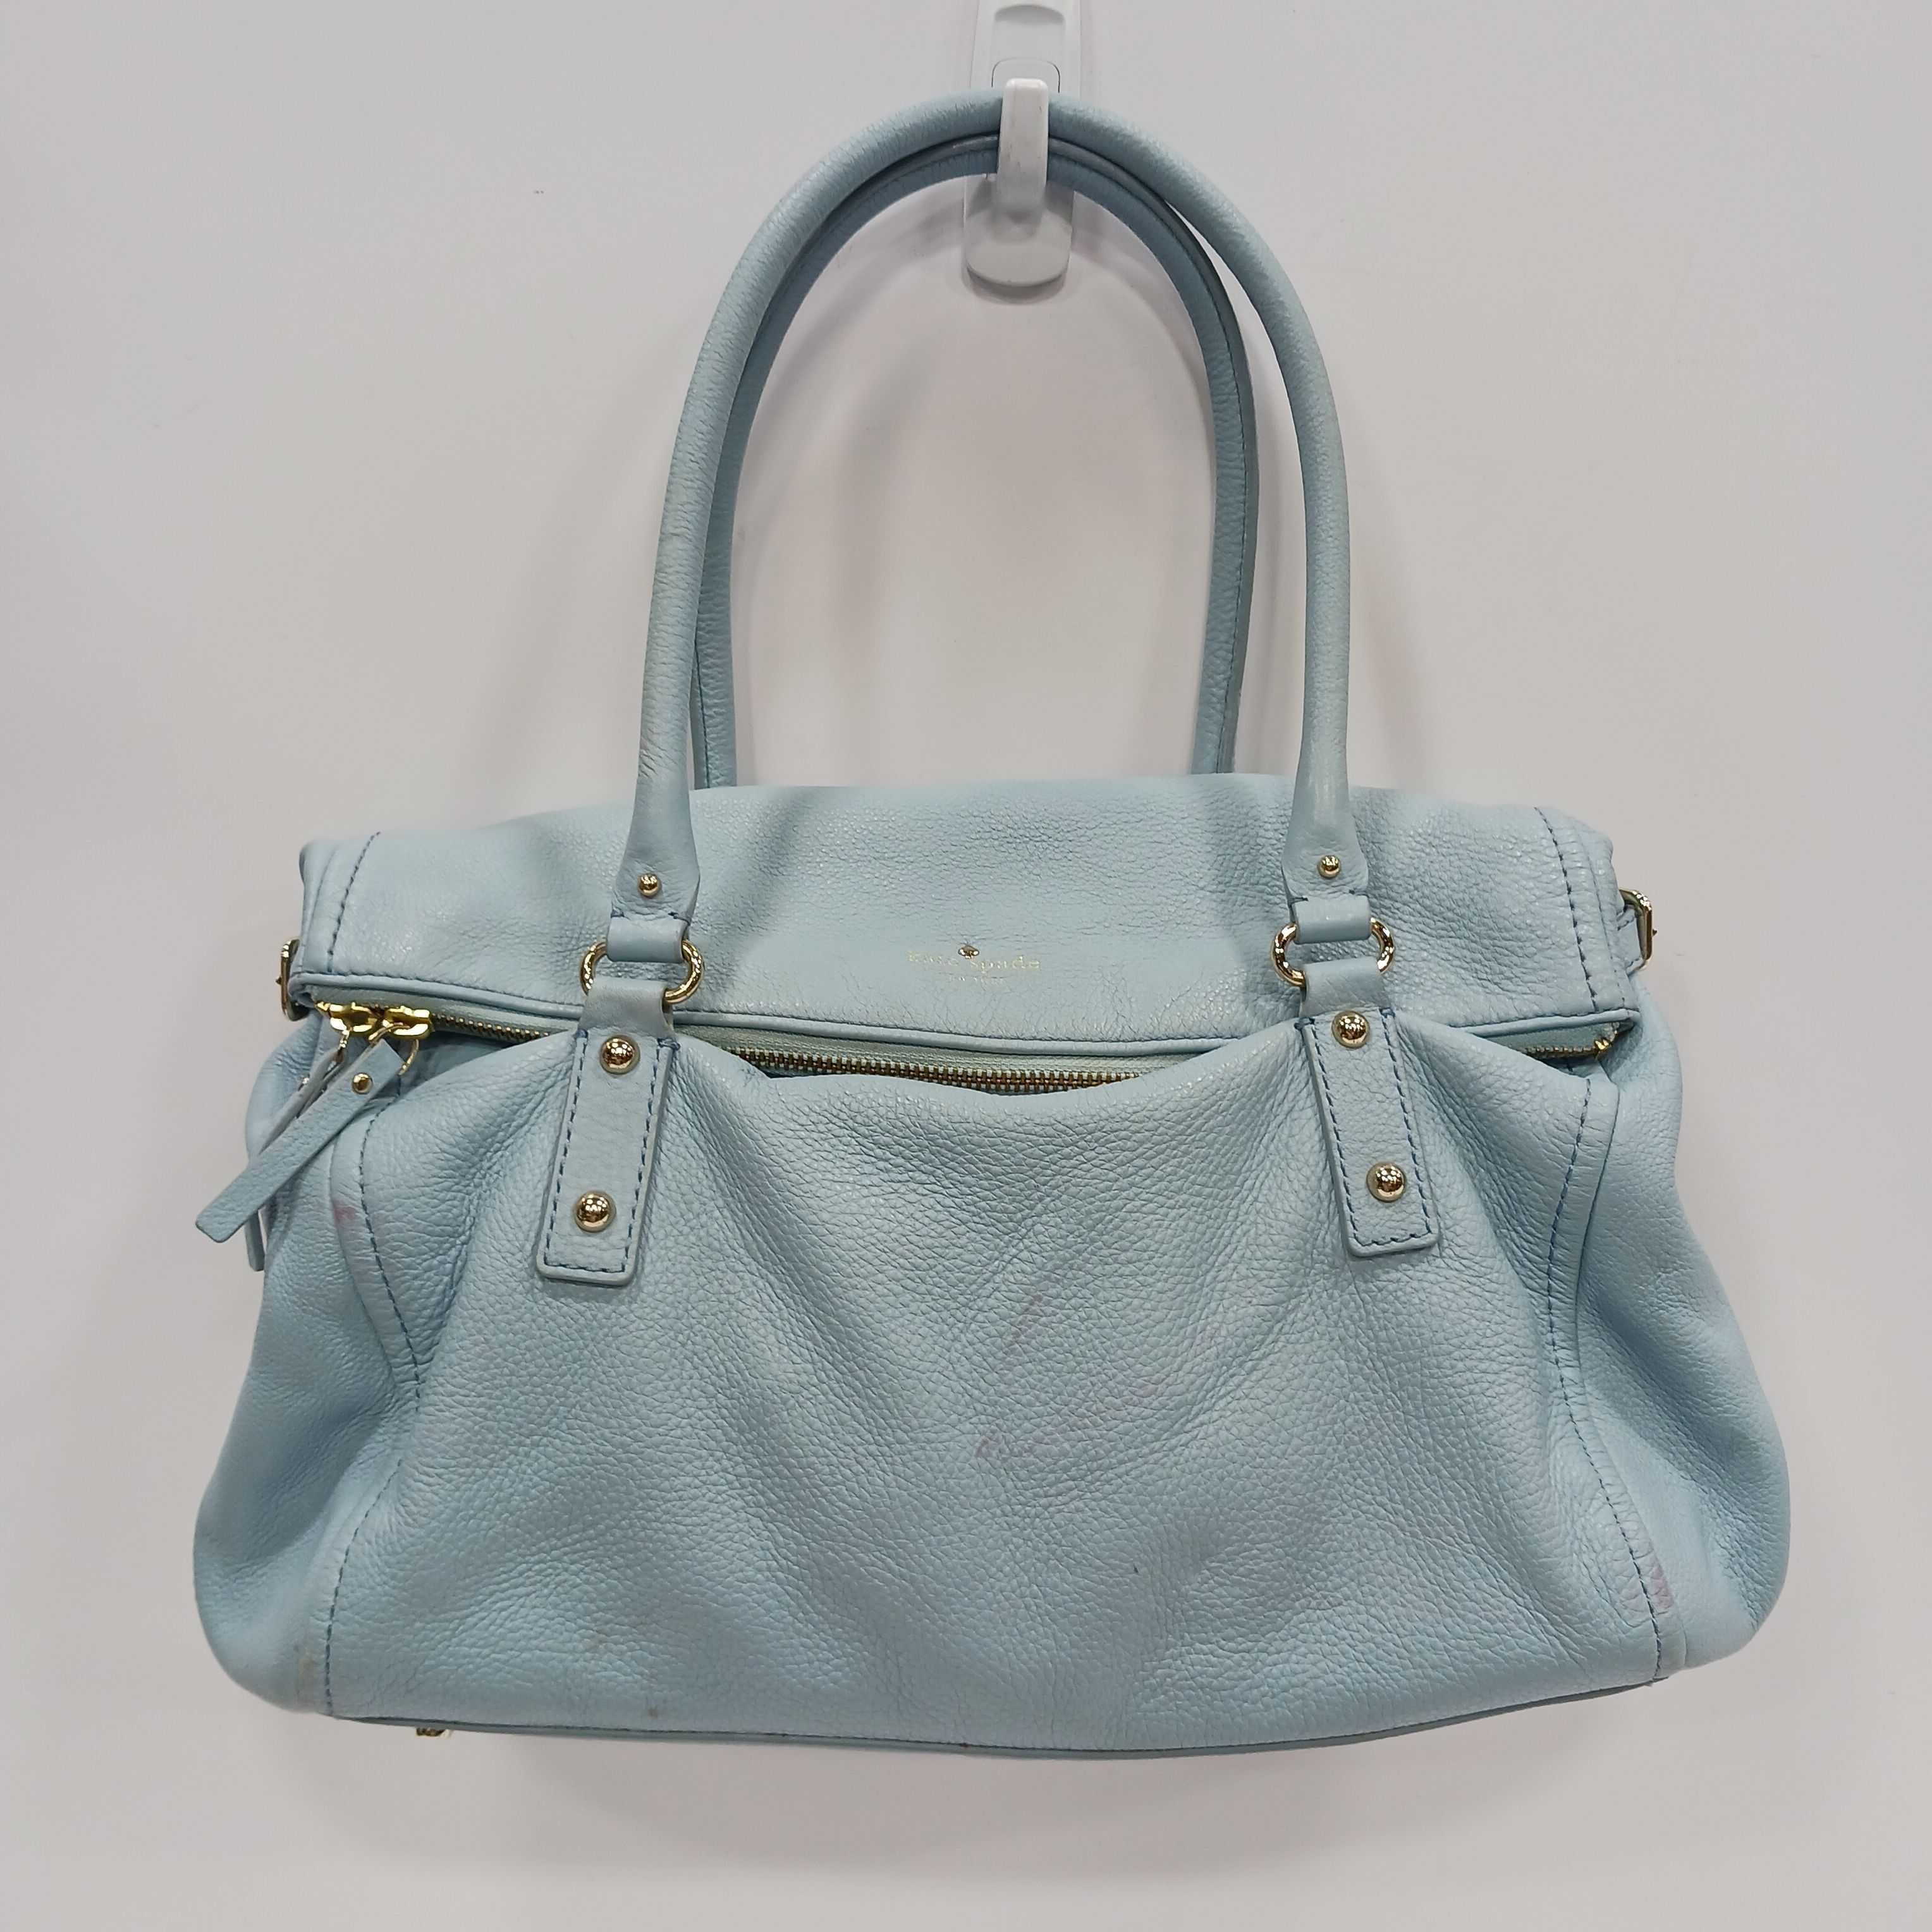 Newbury Lane Miles Handbag Designer By Kate Spade Size: Large